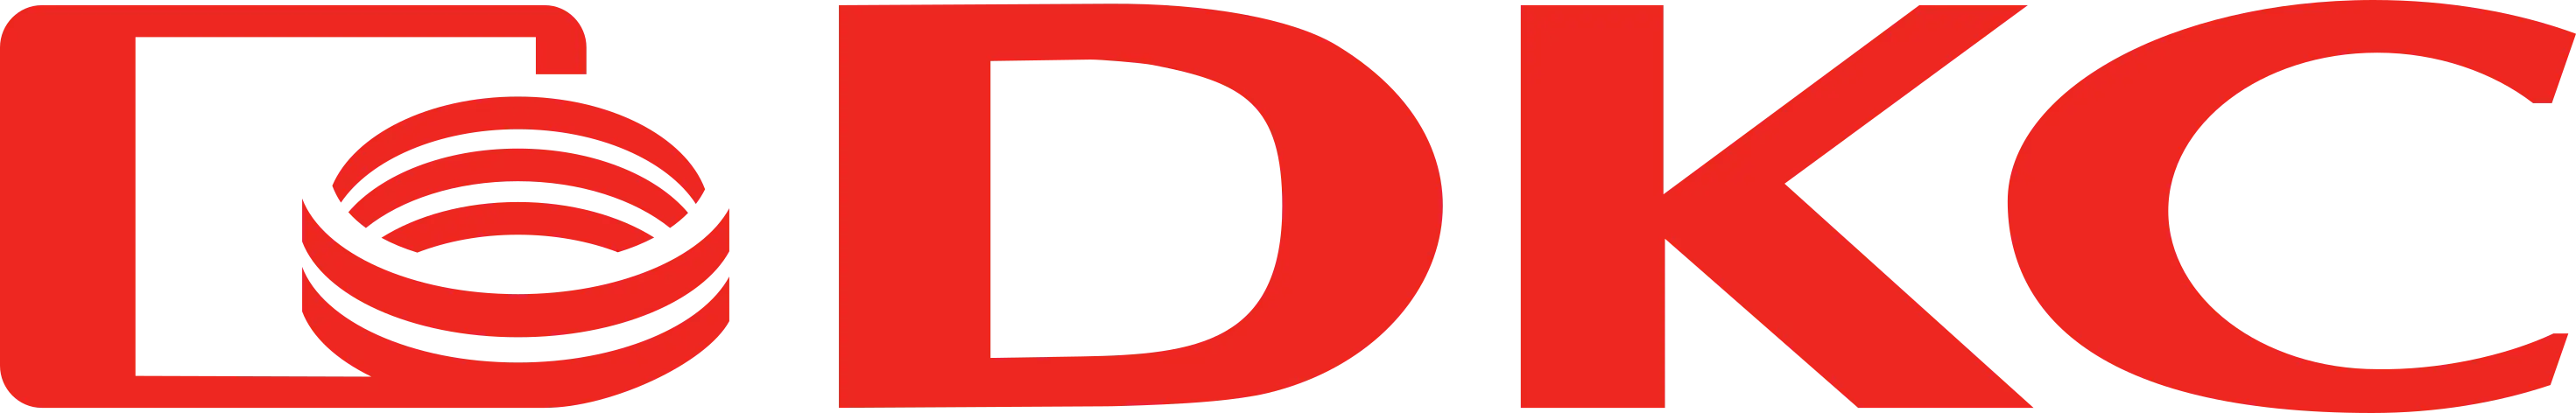 Защитная крышка проводника na1100. DKC логотип. Диэлектрические кабельные системы. АО ДКС логотип.